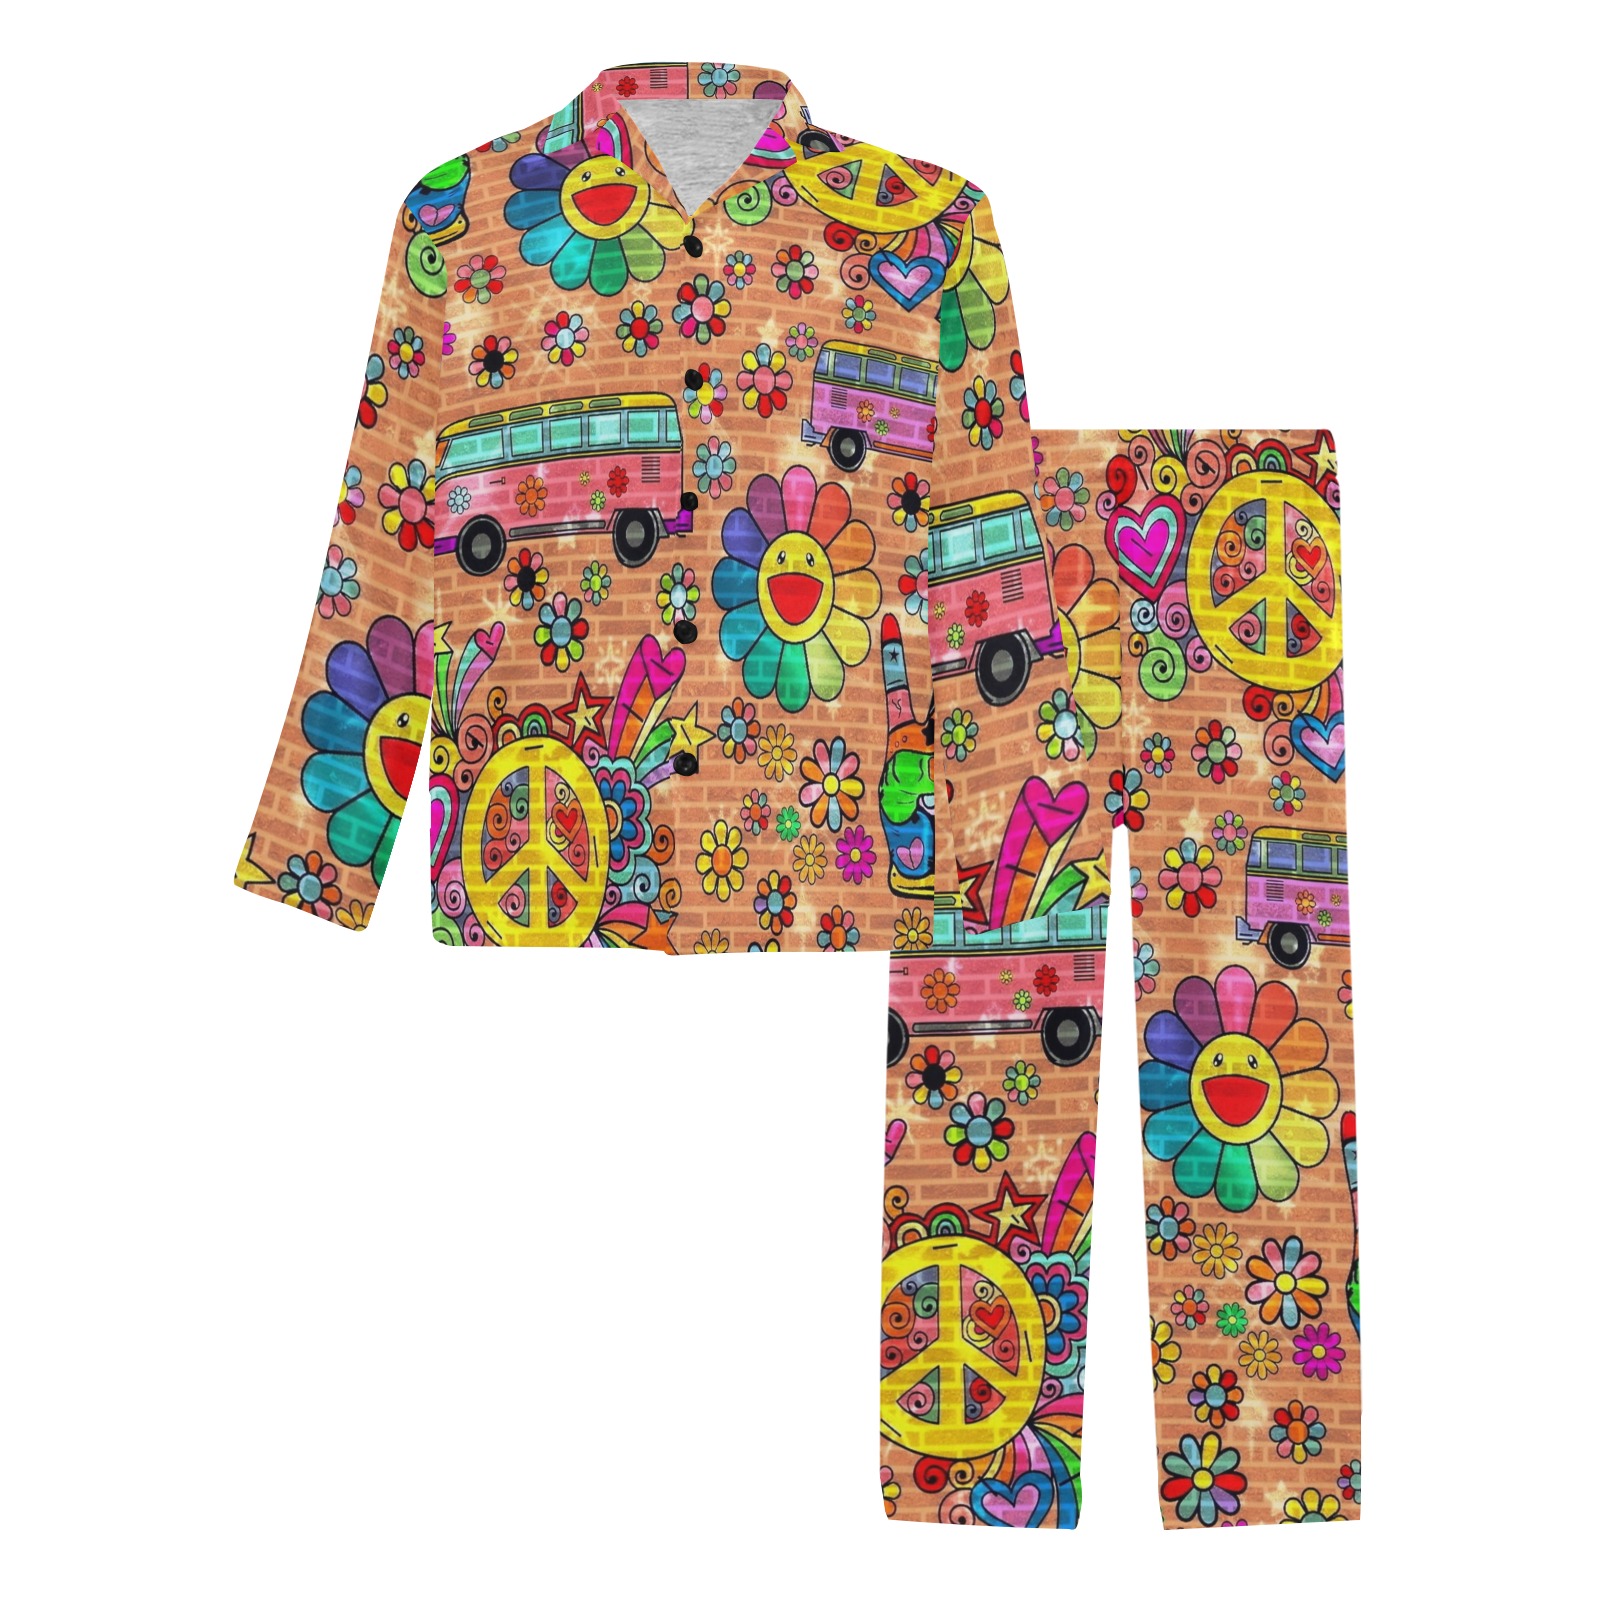 70er Peace by Nico Bielow Men's V-Neck Long Pajama Set